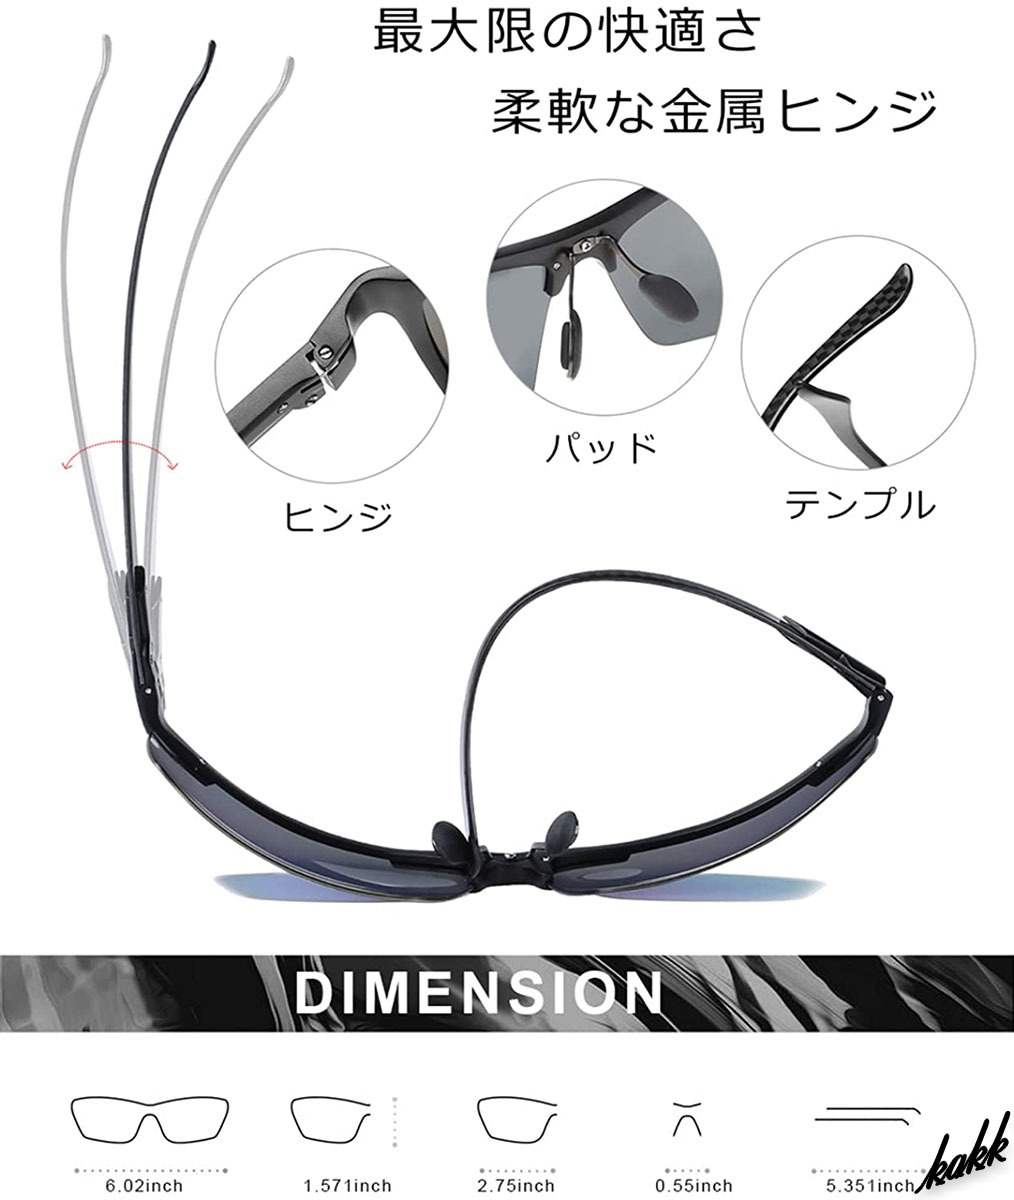 【大きめサイズ】 スポーツサングラス 偏光レンズ アレルギーフリー 超軽量 UV400 日本人設計 ドライブ 釣り ランニング 登山 ブラック